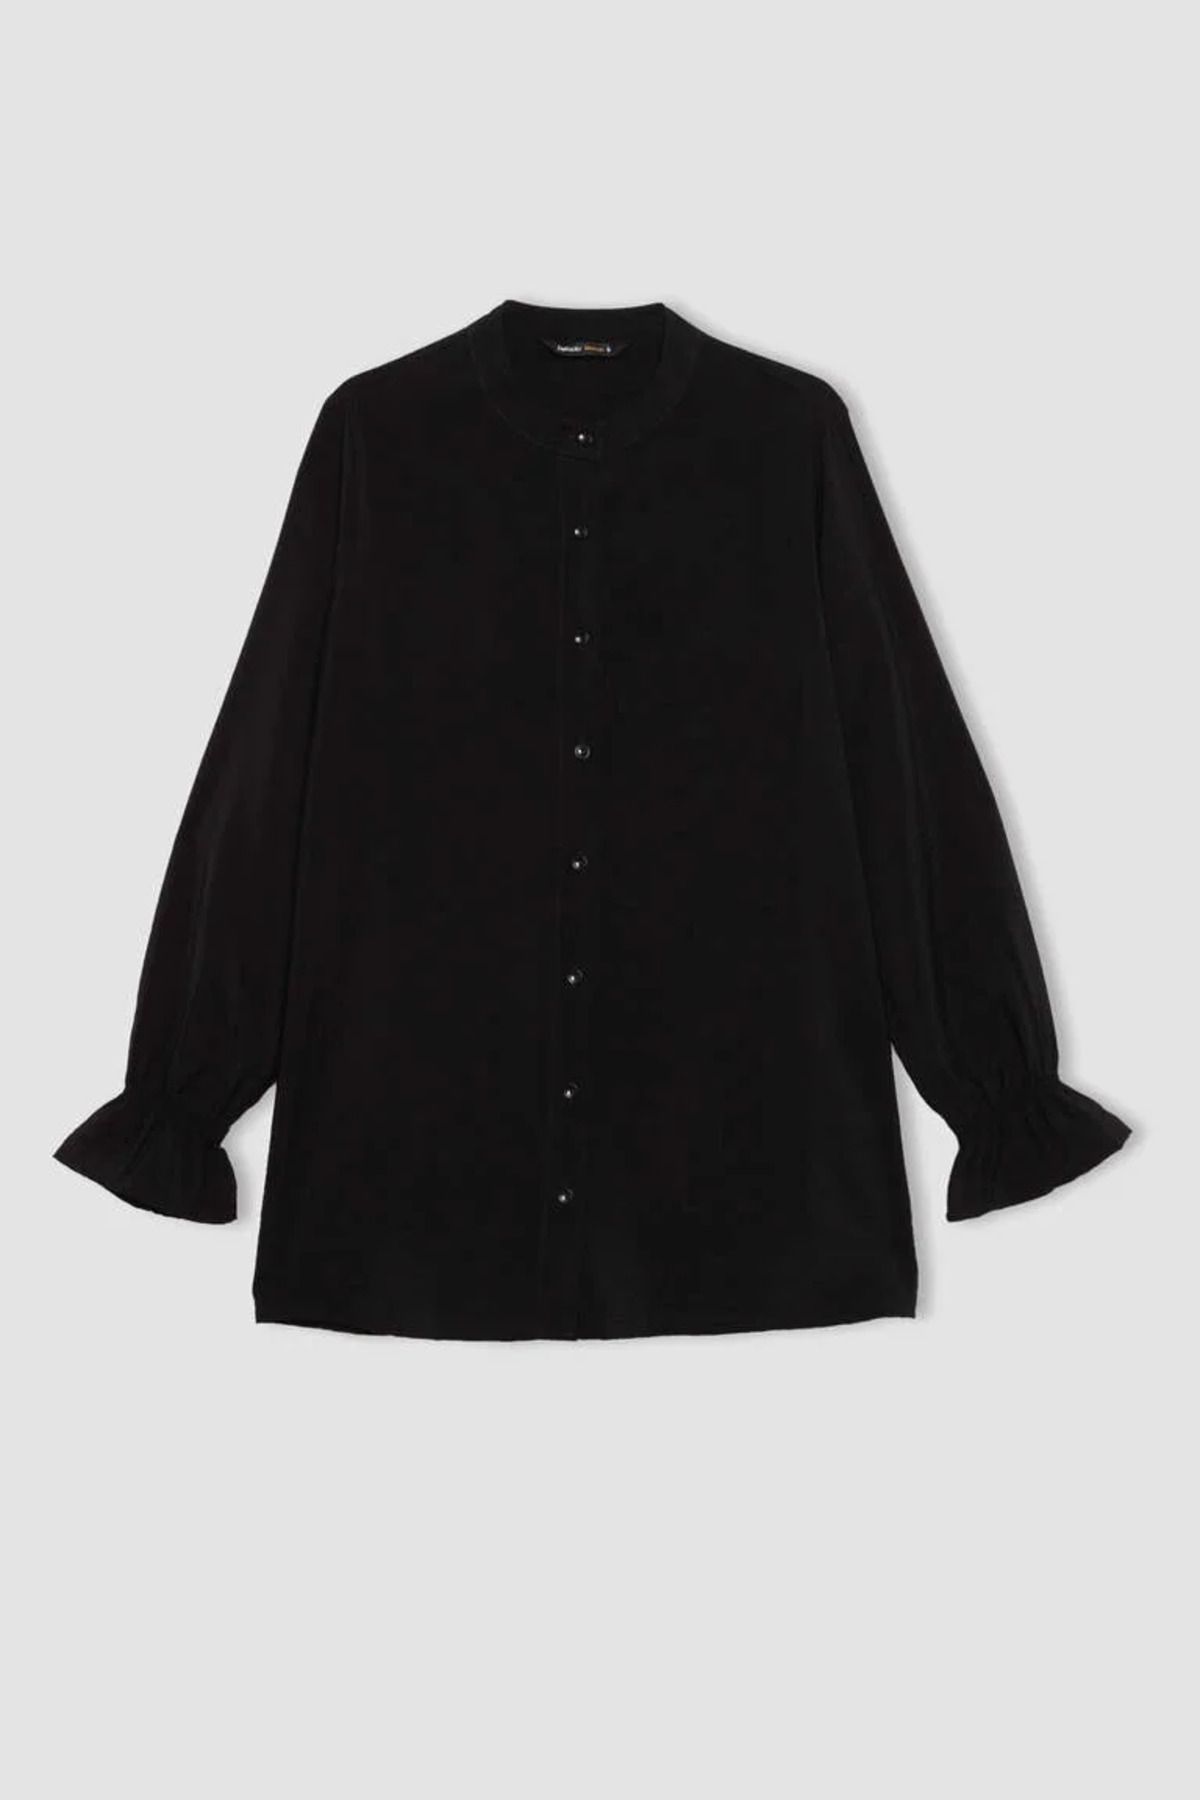 Defacto Kadın Gömlek B1558ax/bk81 Black